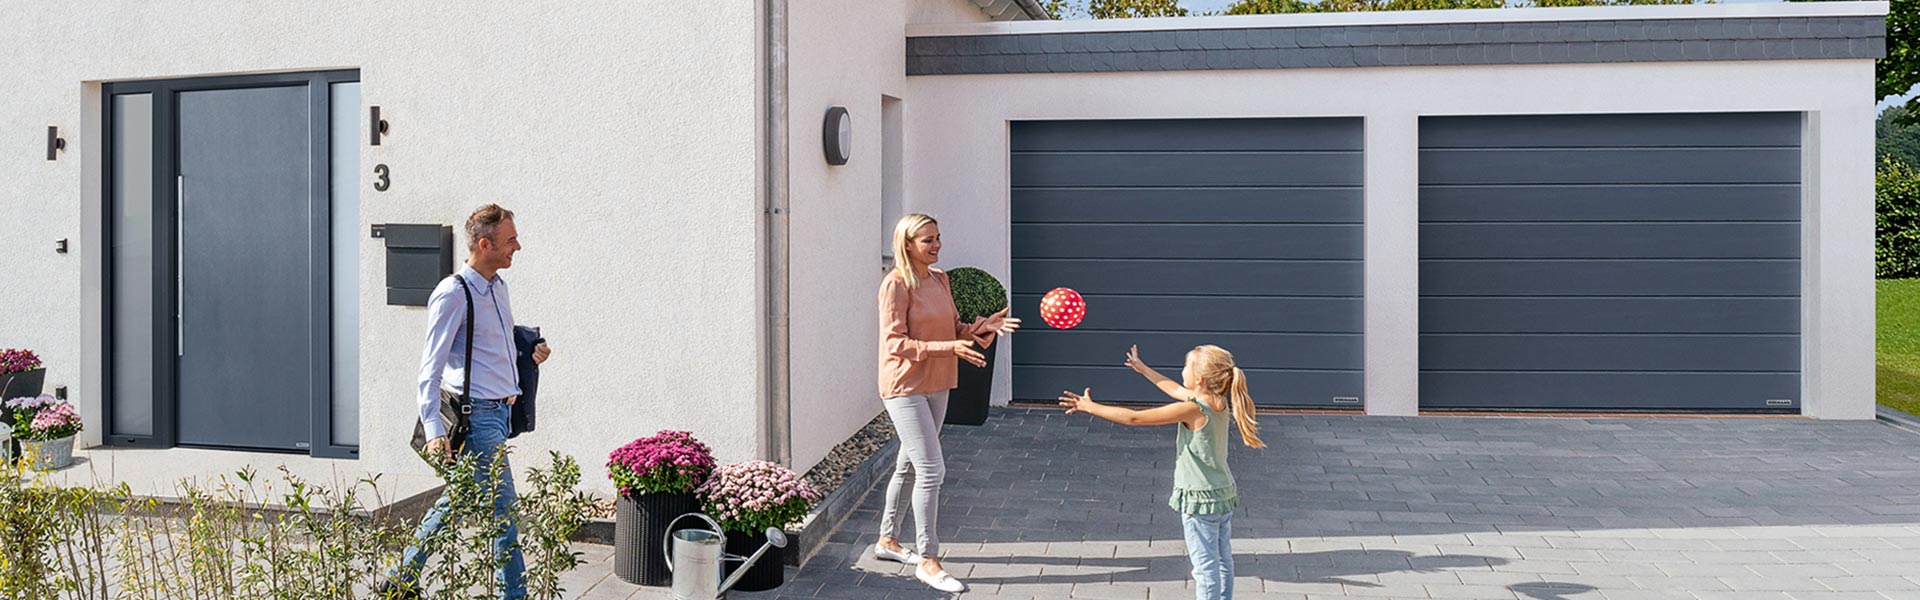 Frau und Kind spielen mit Ball vor Garage